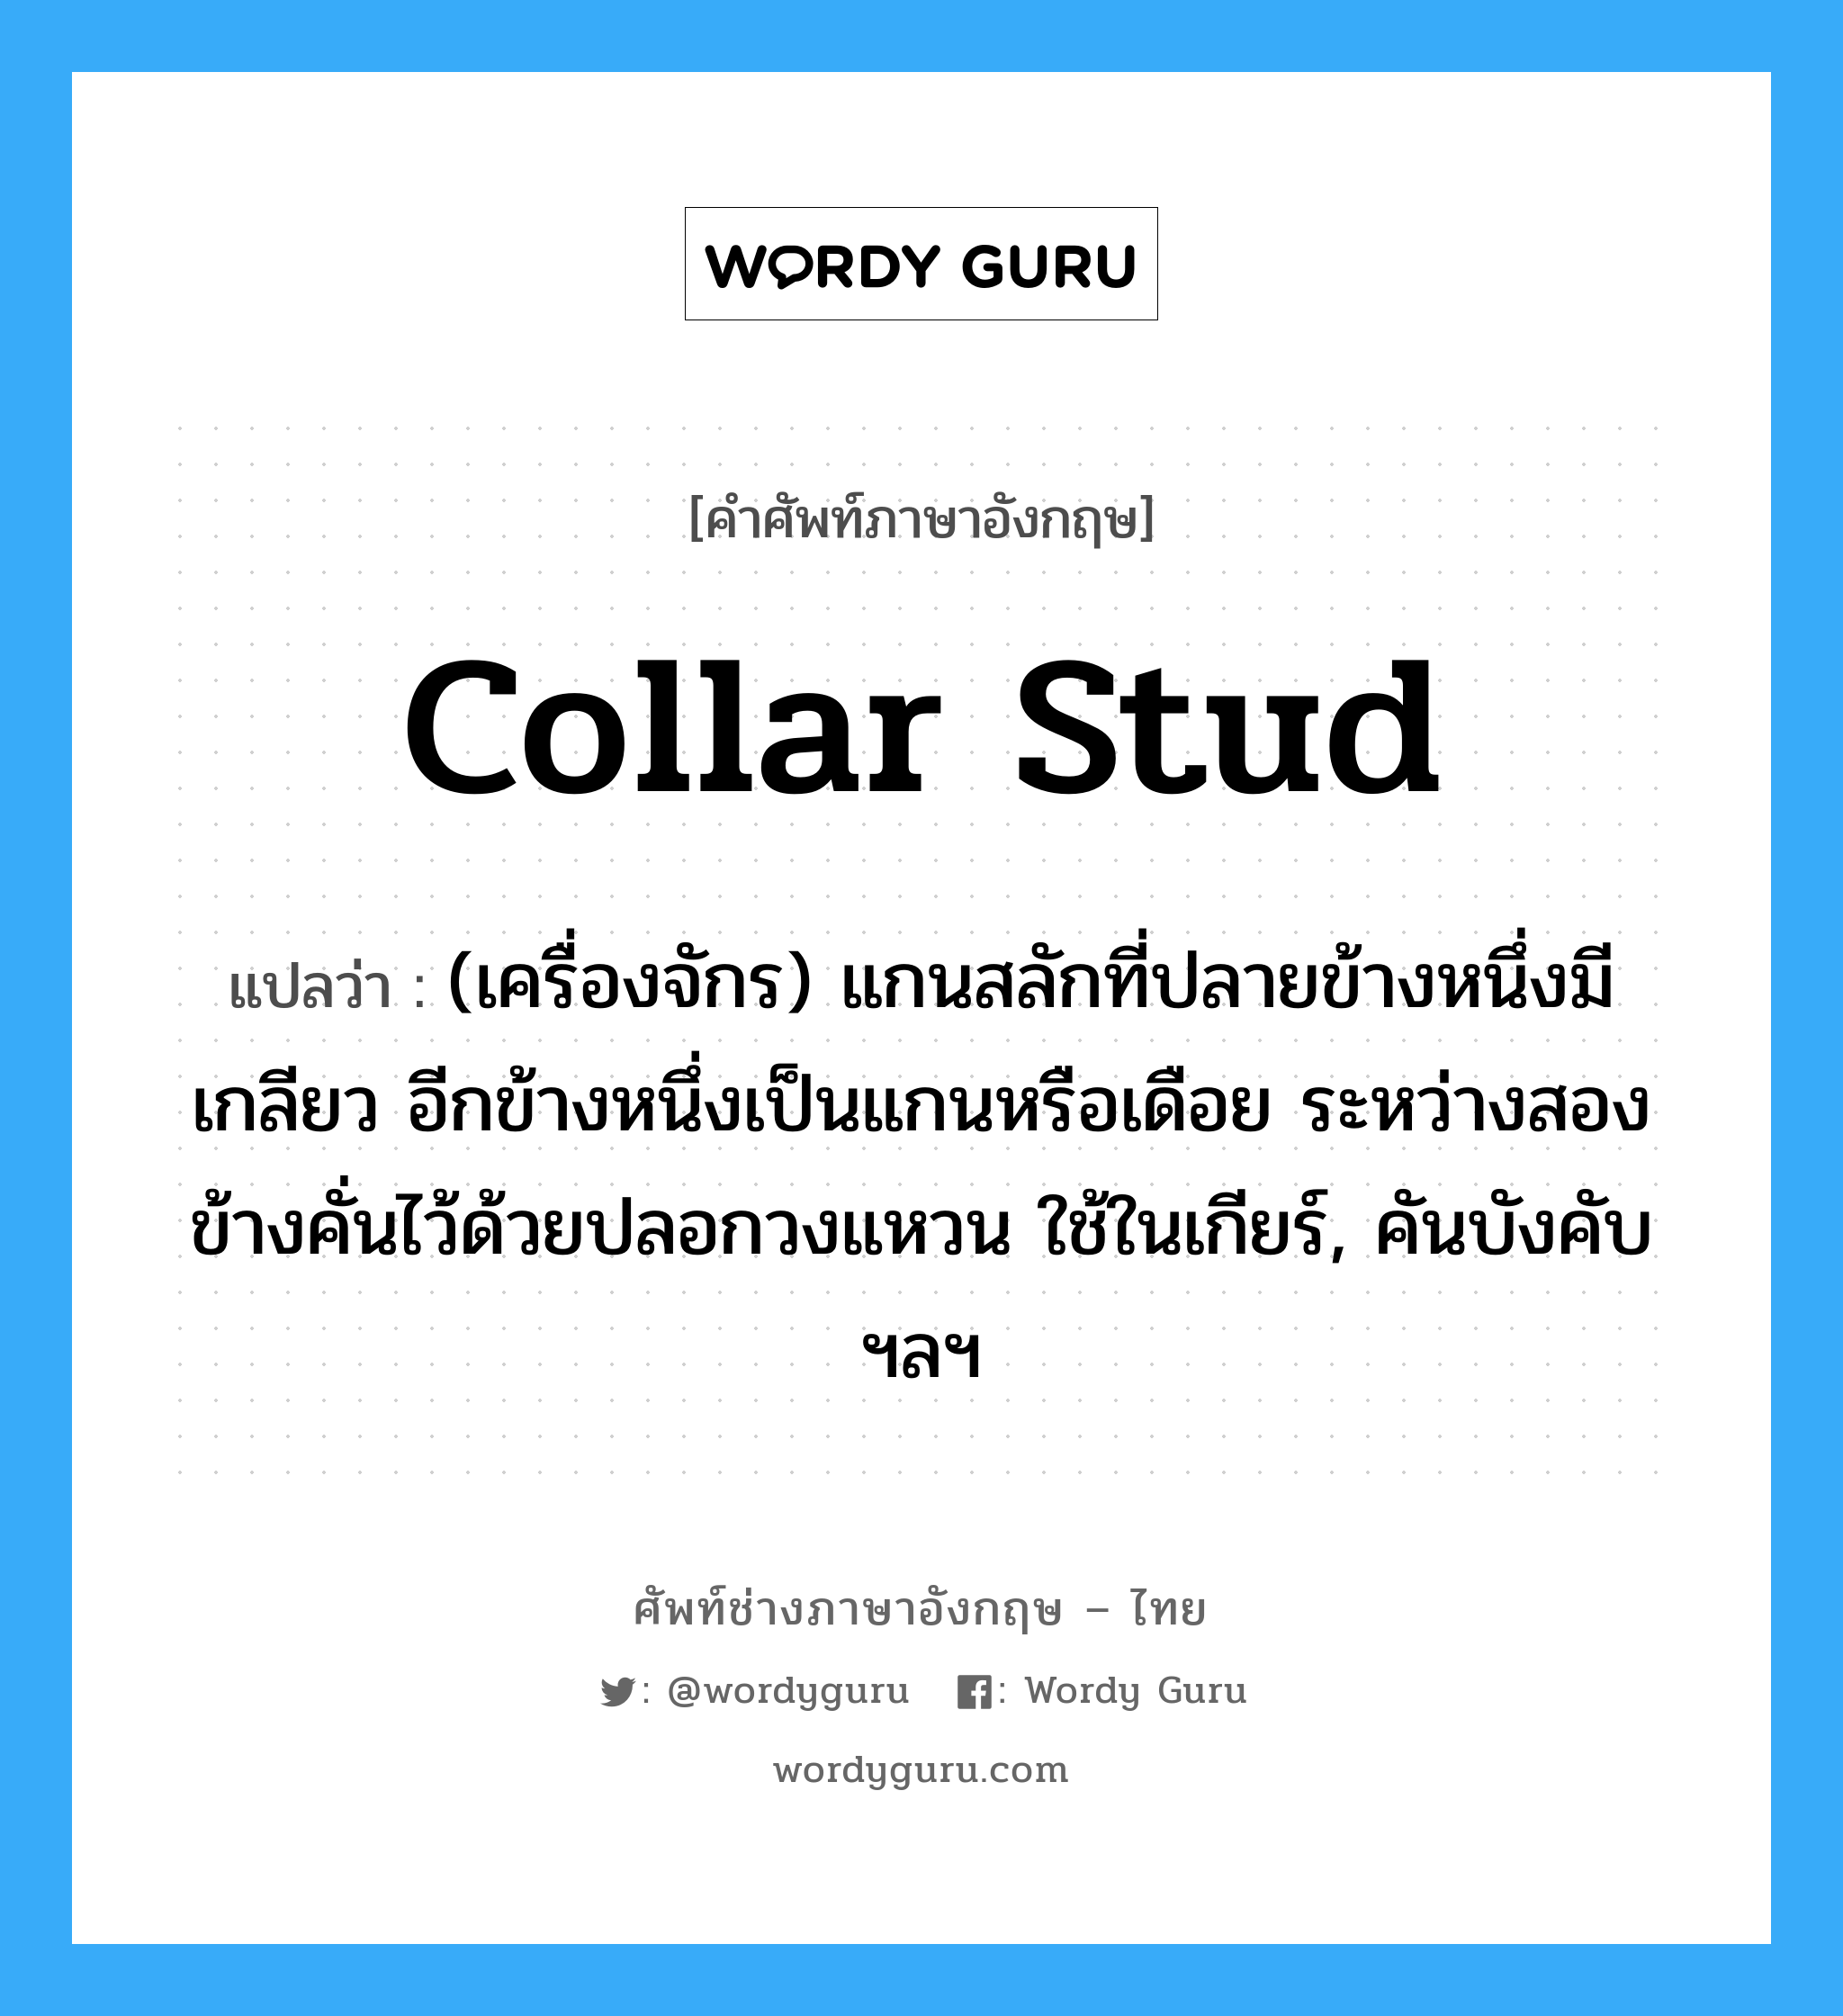 collar stud แปลว่า?, คำศัพท์ช่างภาษาอังกฤษ - ไทย collar stud คำศัพท์ภาษาอังกฤษ collar stud แปลว่า (เครื่องจักร) แกนสลักที่ปลายข้างหนึ่งมีเกลียว อีกข้างหนึ่งเป็นแกนหรือเดือย ระหว่างสองข้างคั่นไว้ด้วยปลอกวงแหวน ใช้ในเกียร์, คันบังคับ ฯลฯ